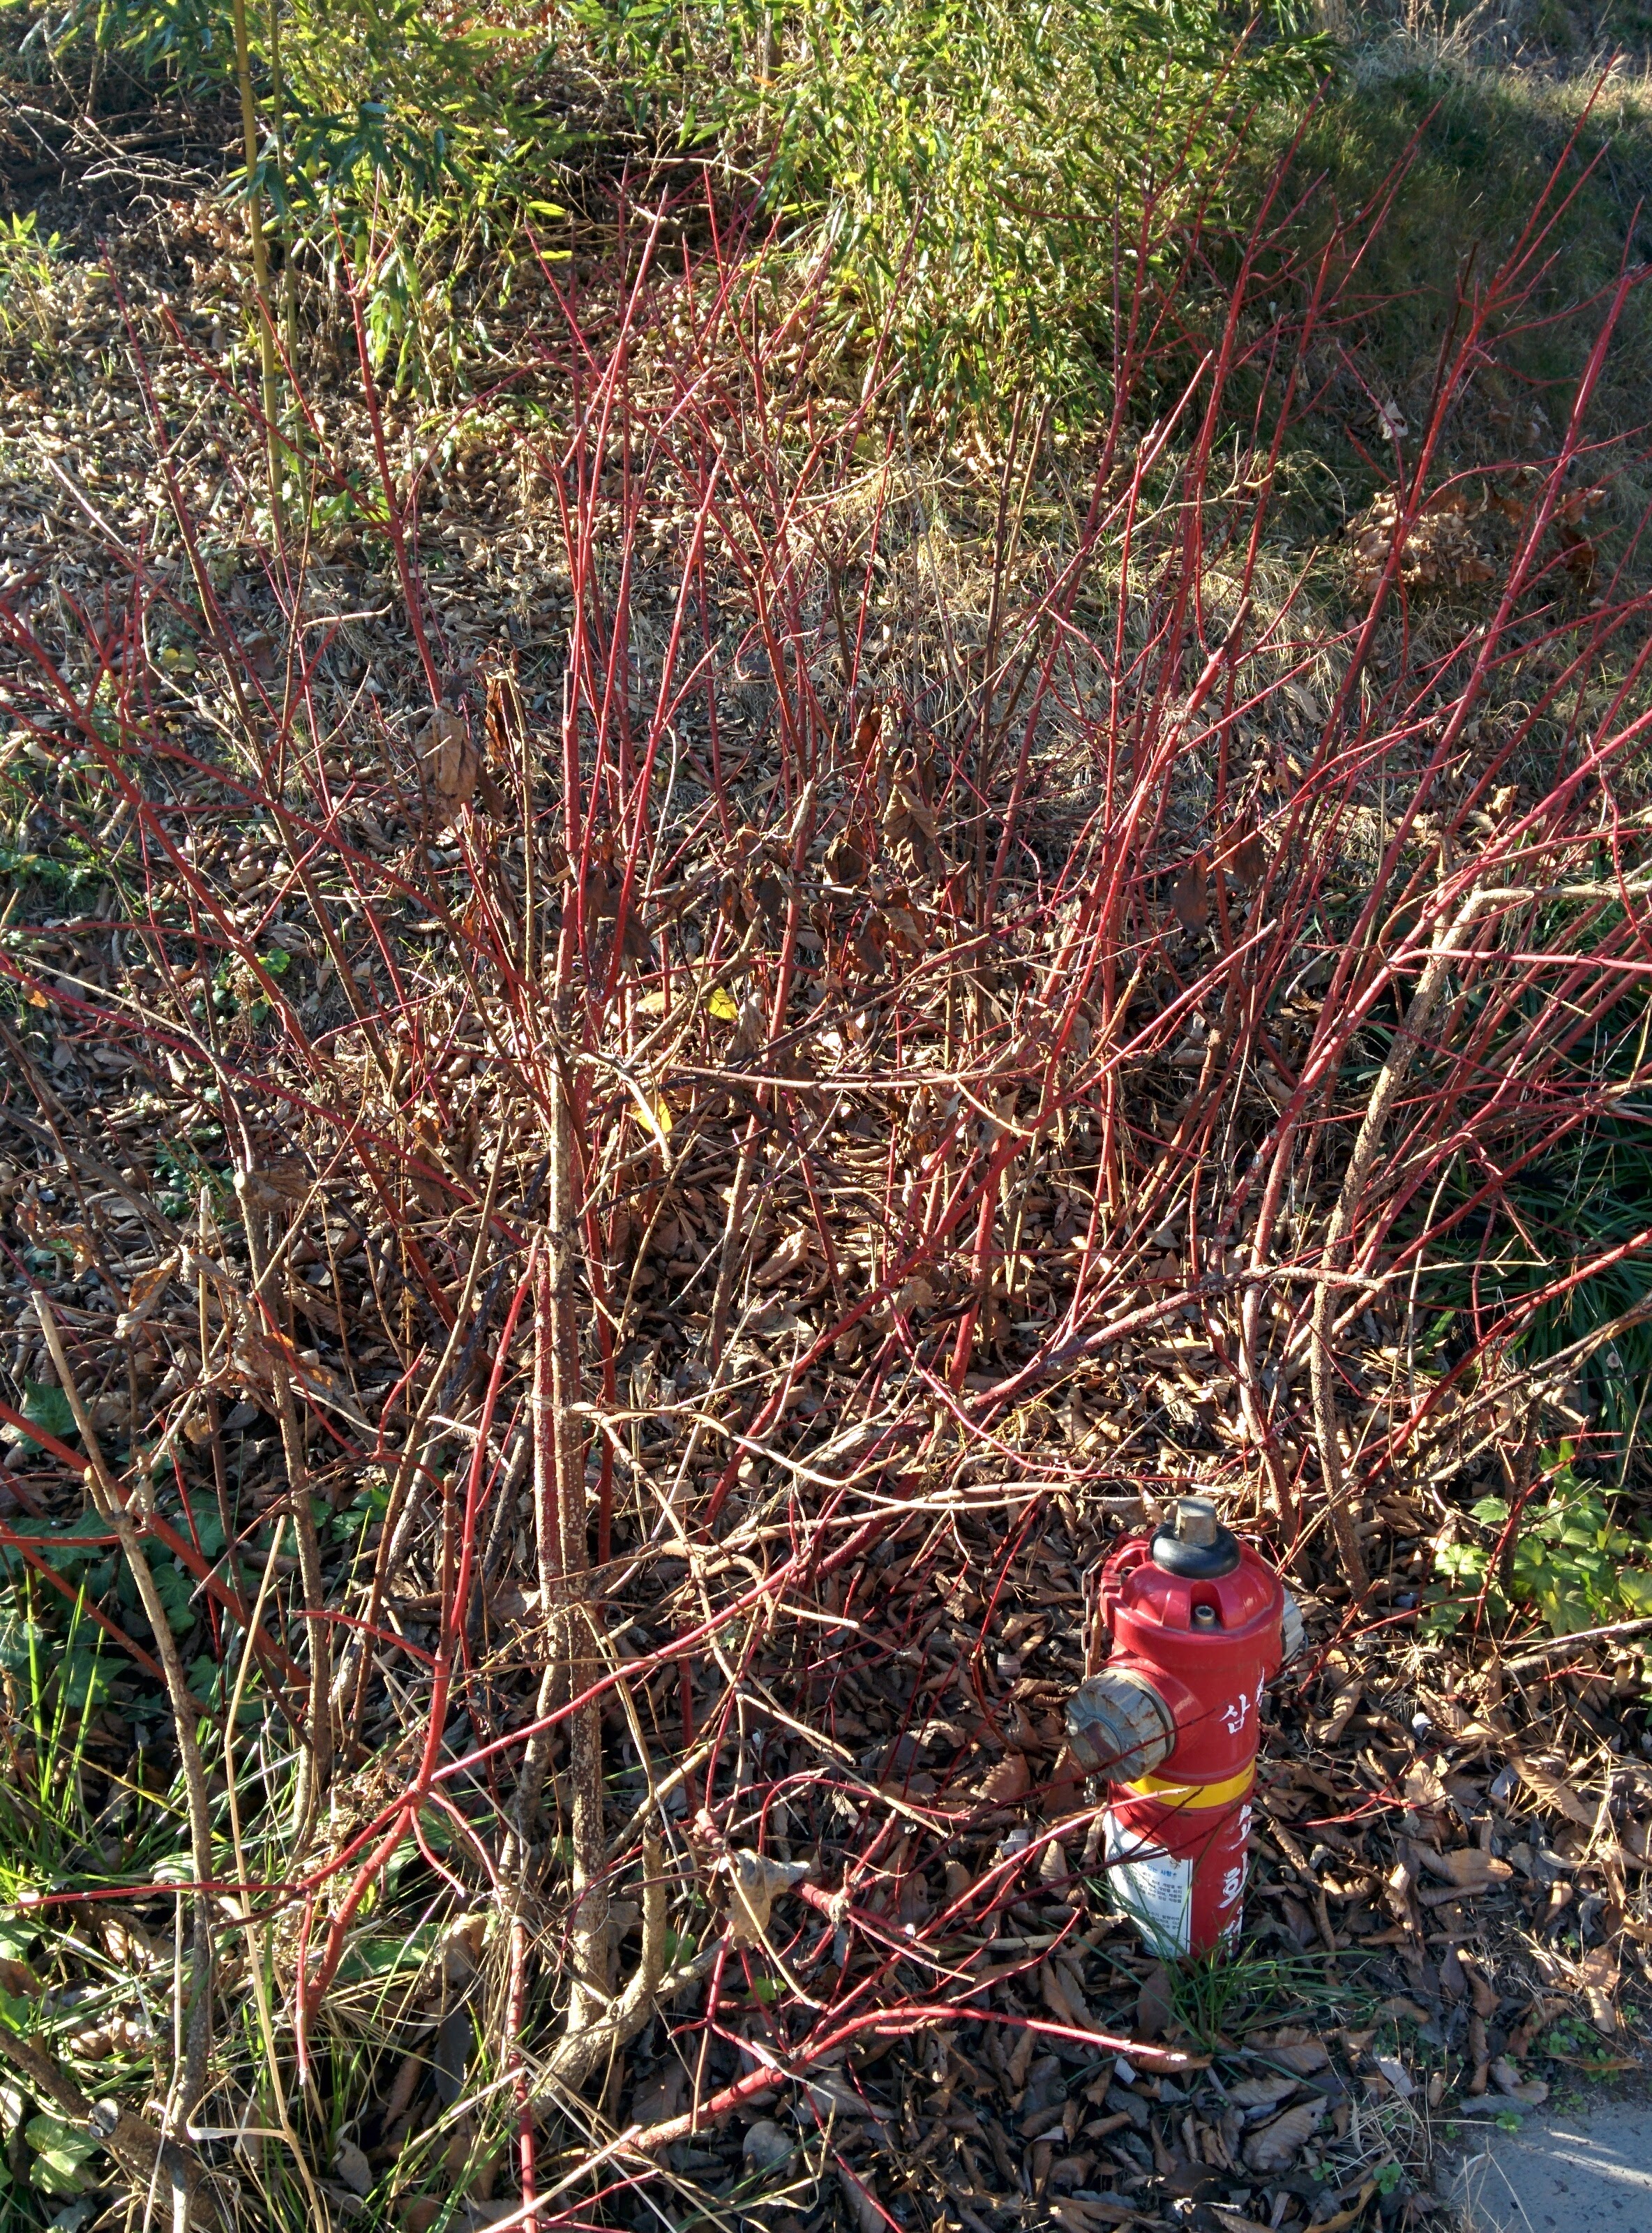 IMG_20151228_140819.jpg 붉은색 줄기가 특이한 겨울의 흰말채나무